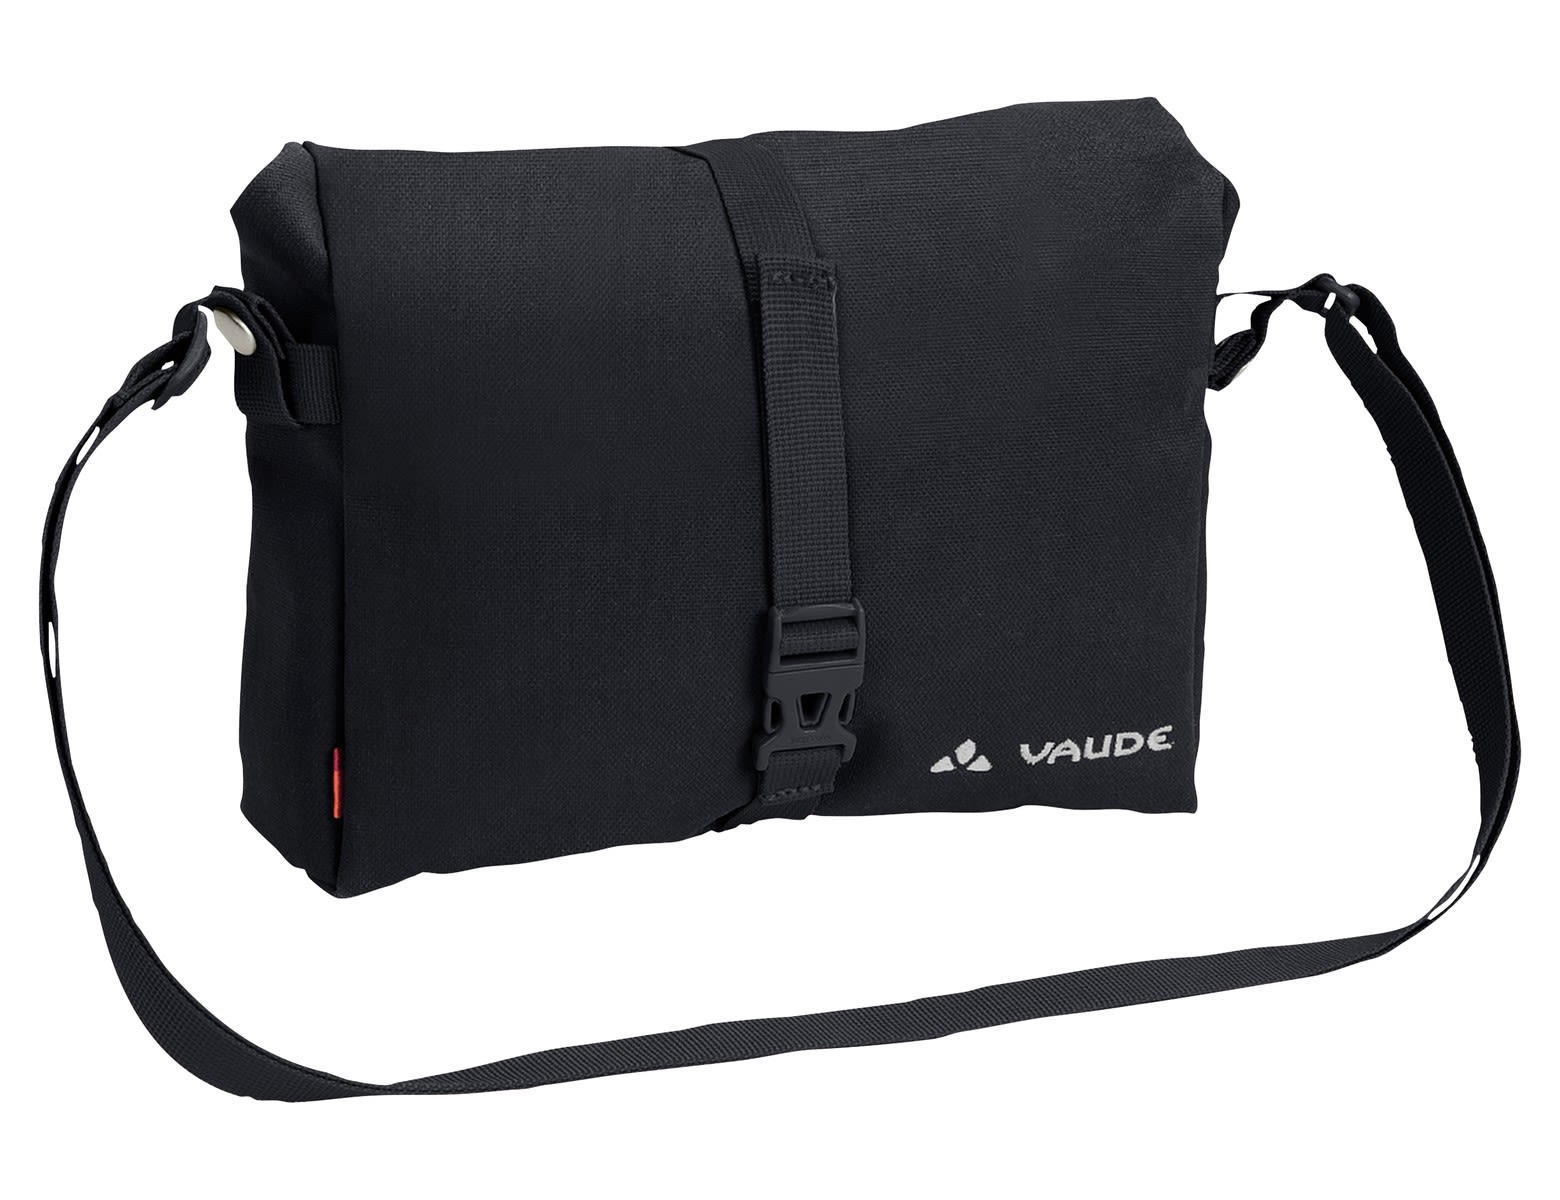 Vaude Shopair BOX Schwarz- Fahrradtaschen- Grsse 5l - Farbe Black